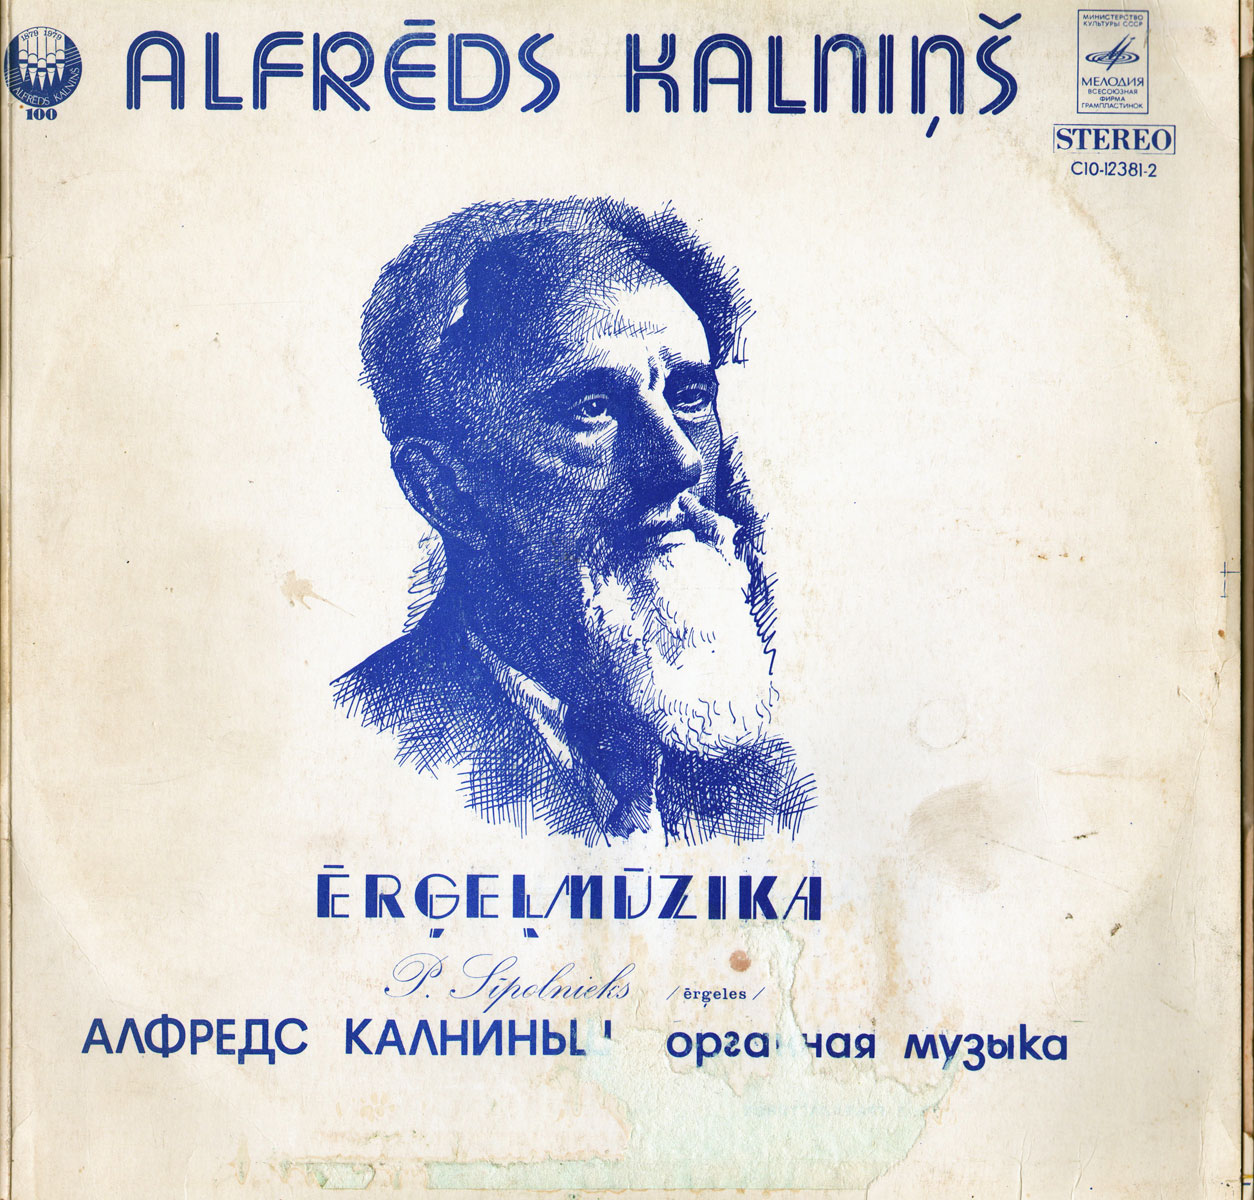 Алфредс Калниньш - Органная музыка